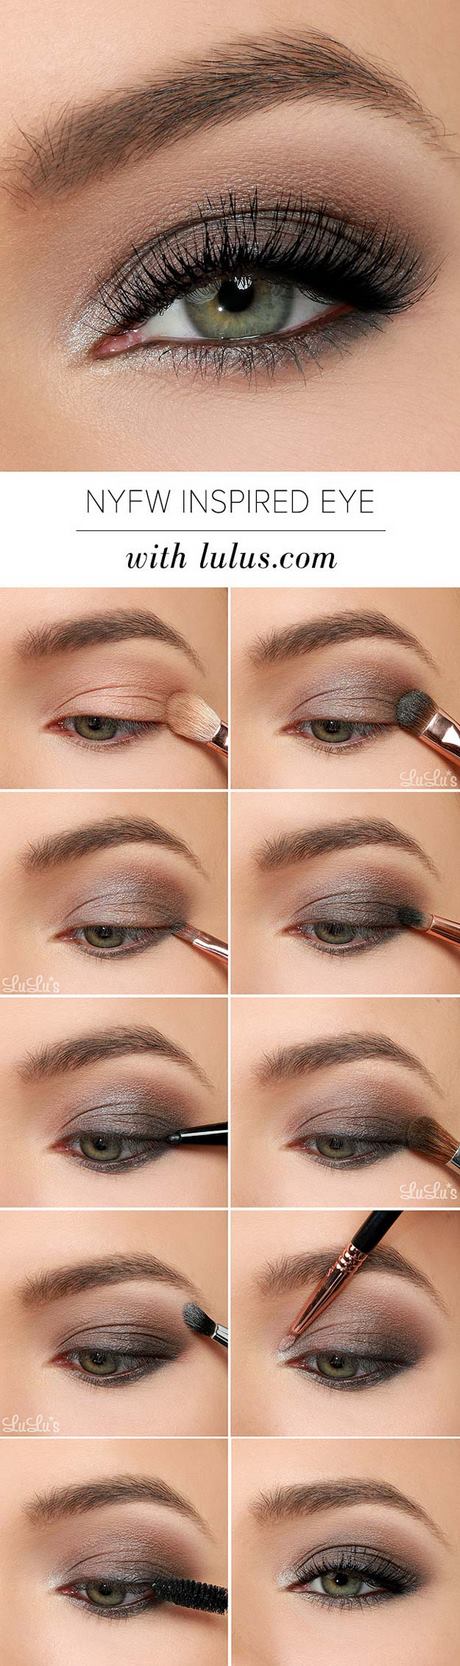 Beste oog make-up tutorials